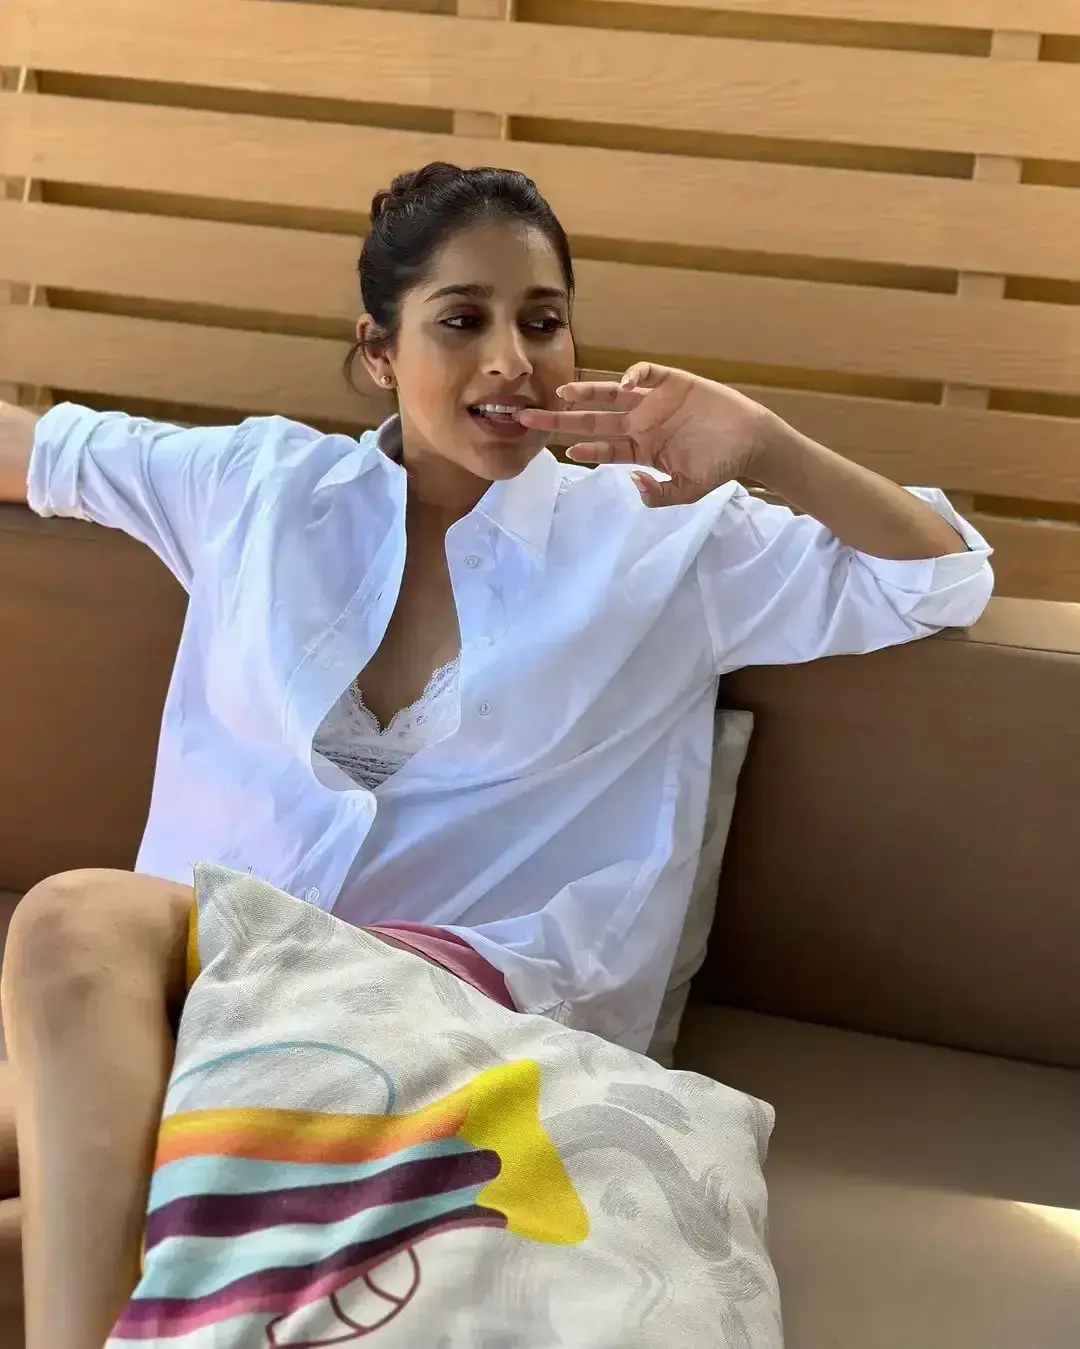 INDIAN TV ACTRESS RASHMI GAUTAM LONG LEGS SHOW IN WHITE SHIRT 6